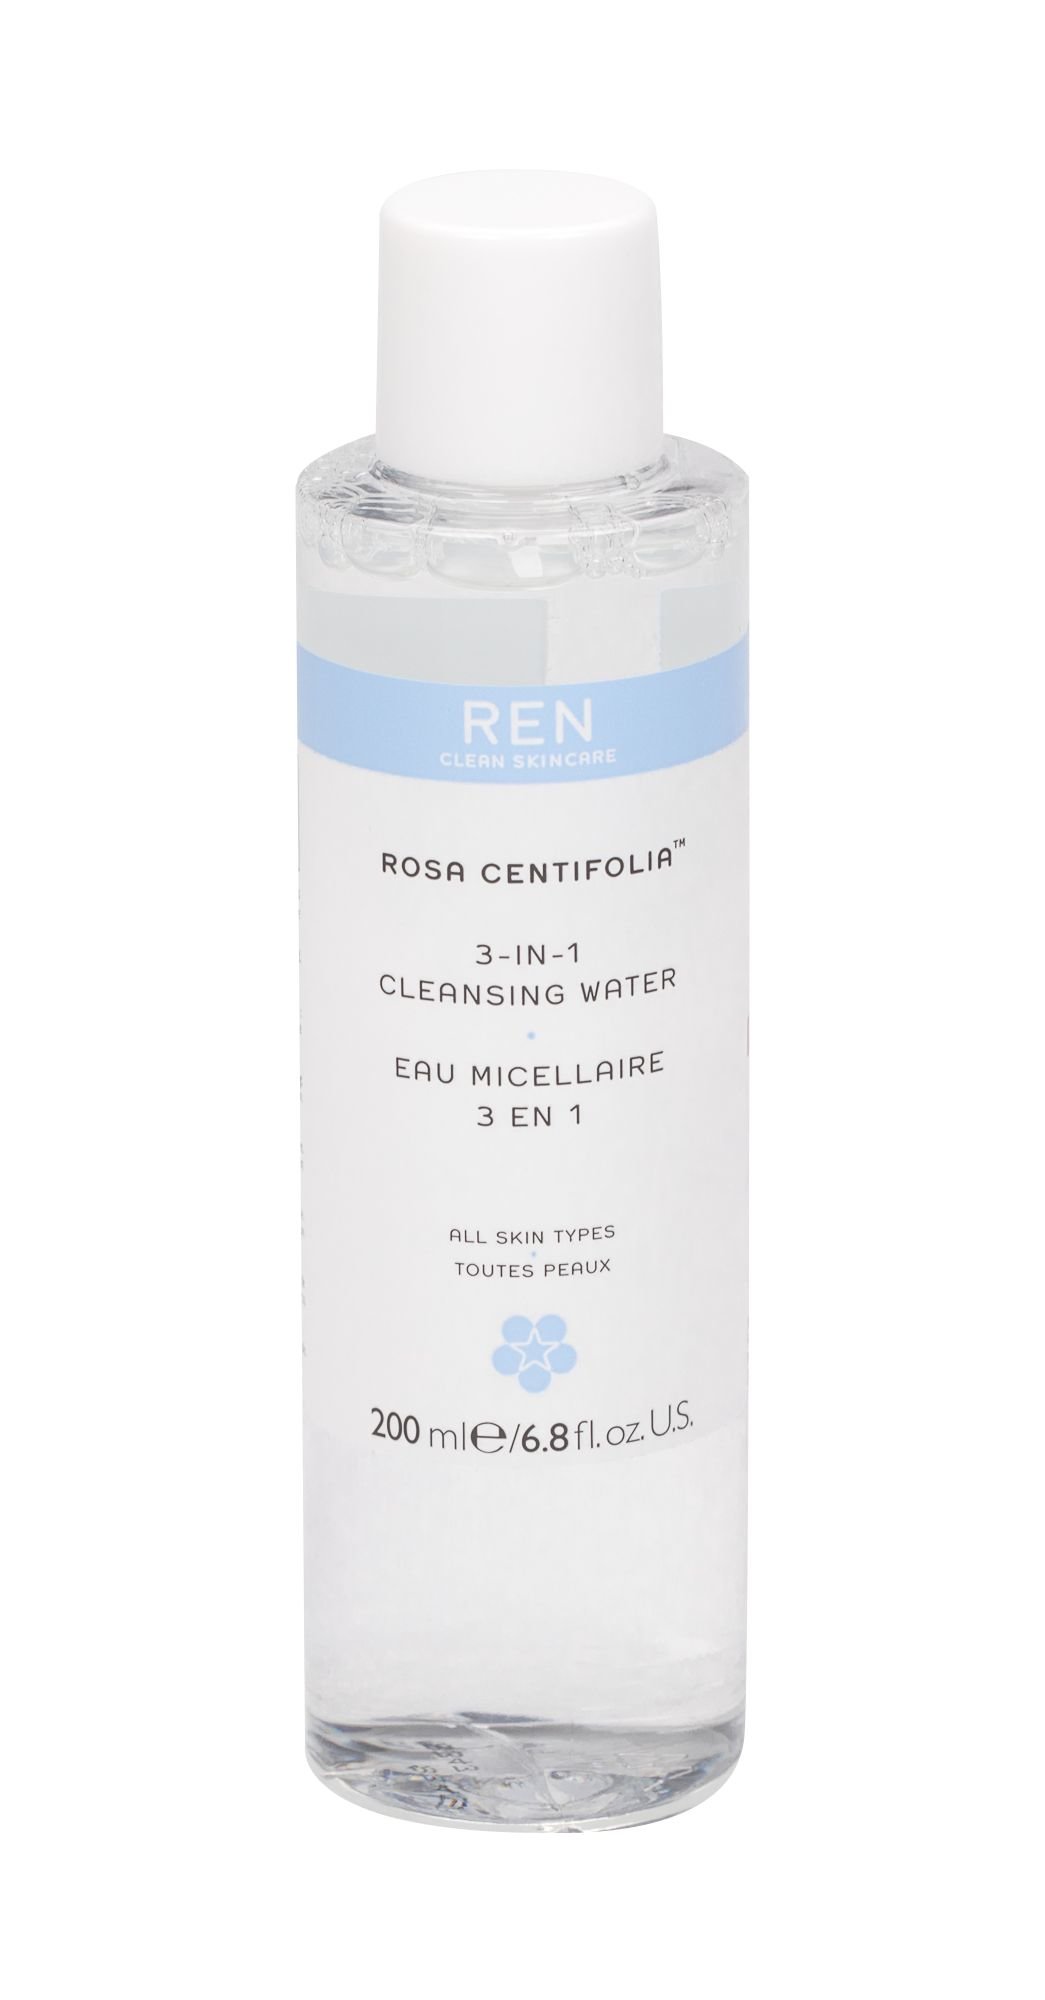 Ren Clean Skincare Rosa Centifolia